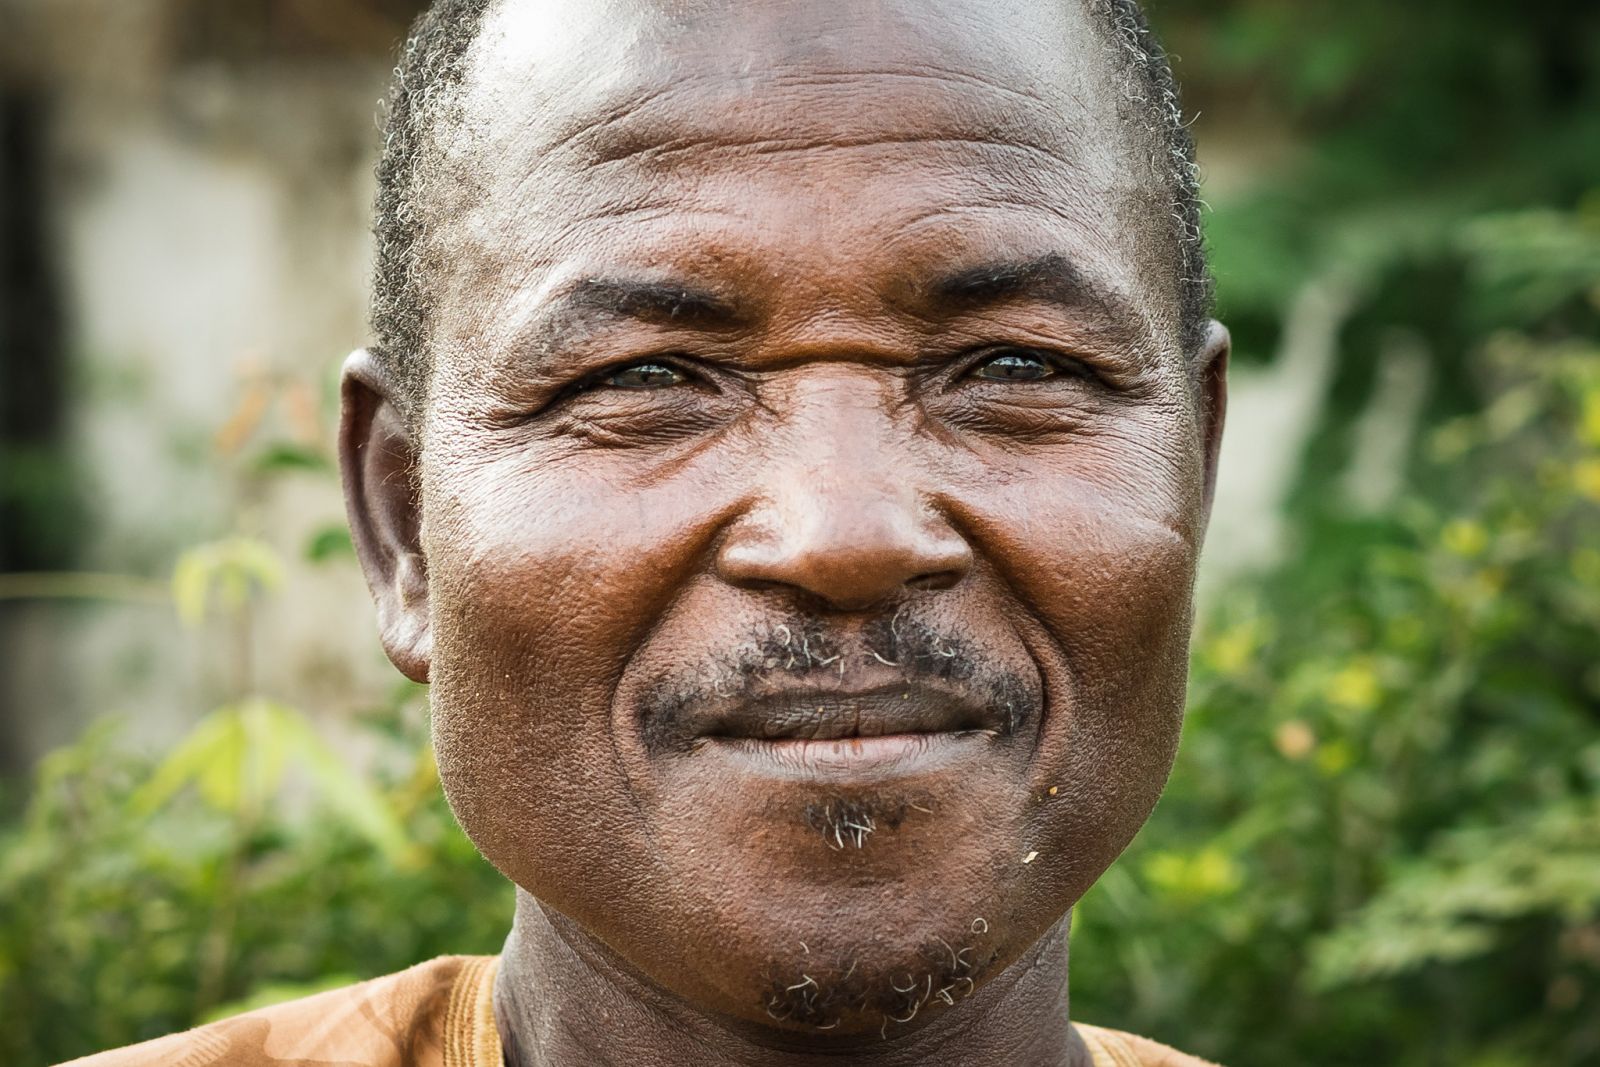 Elderly African man